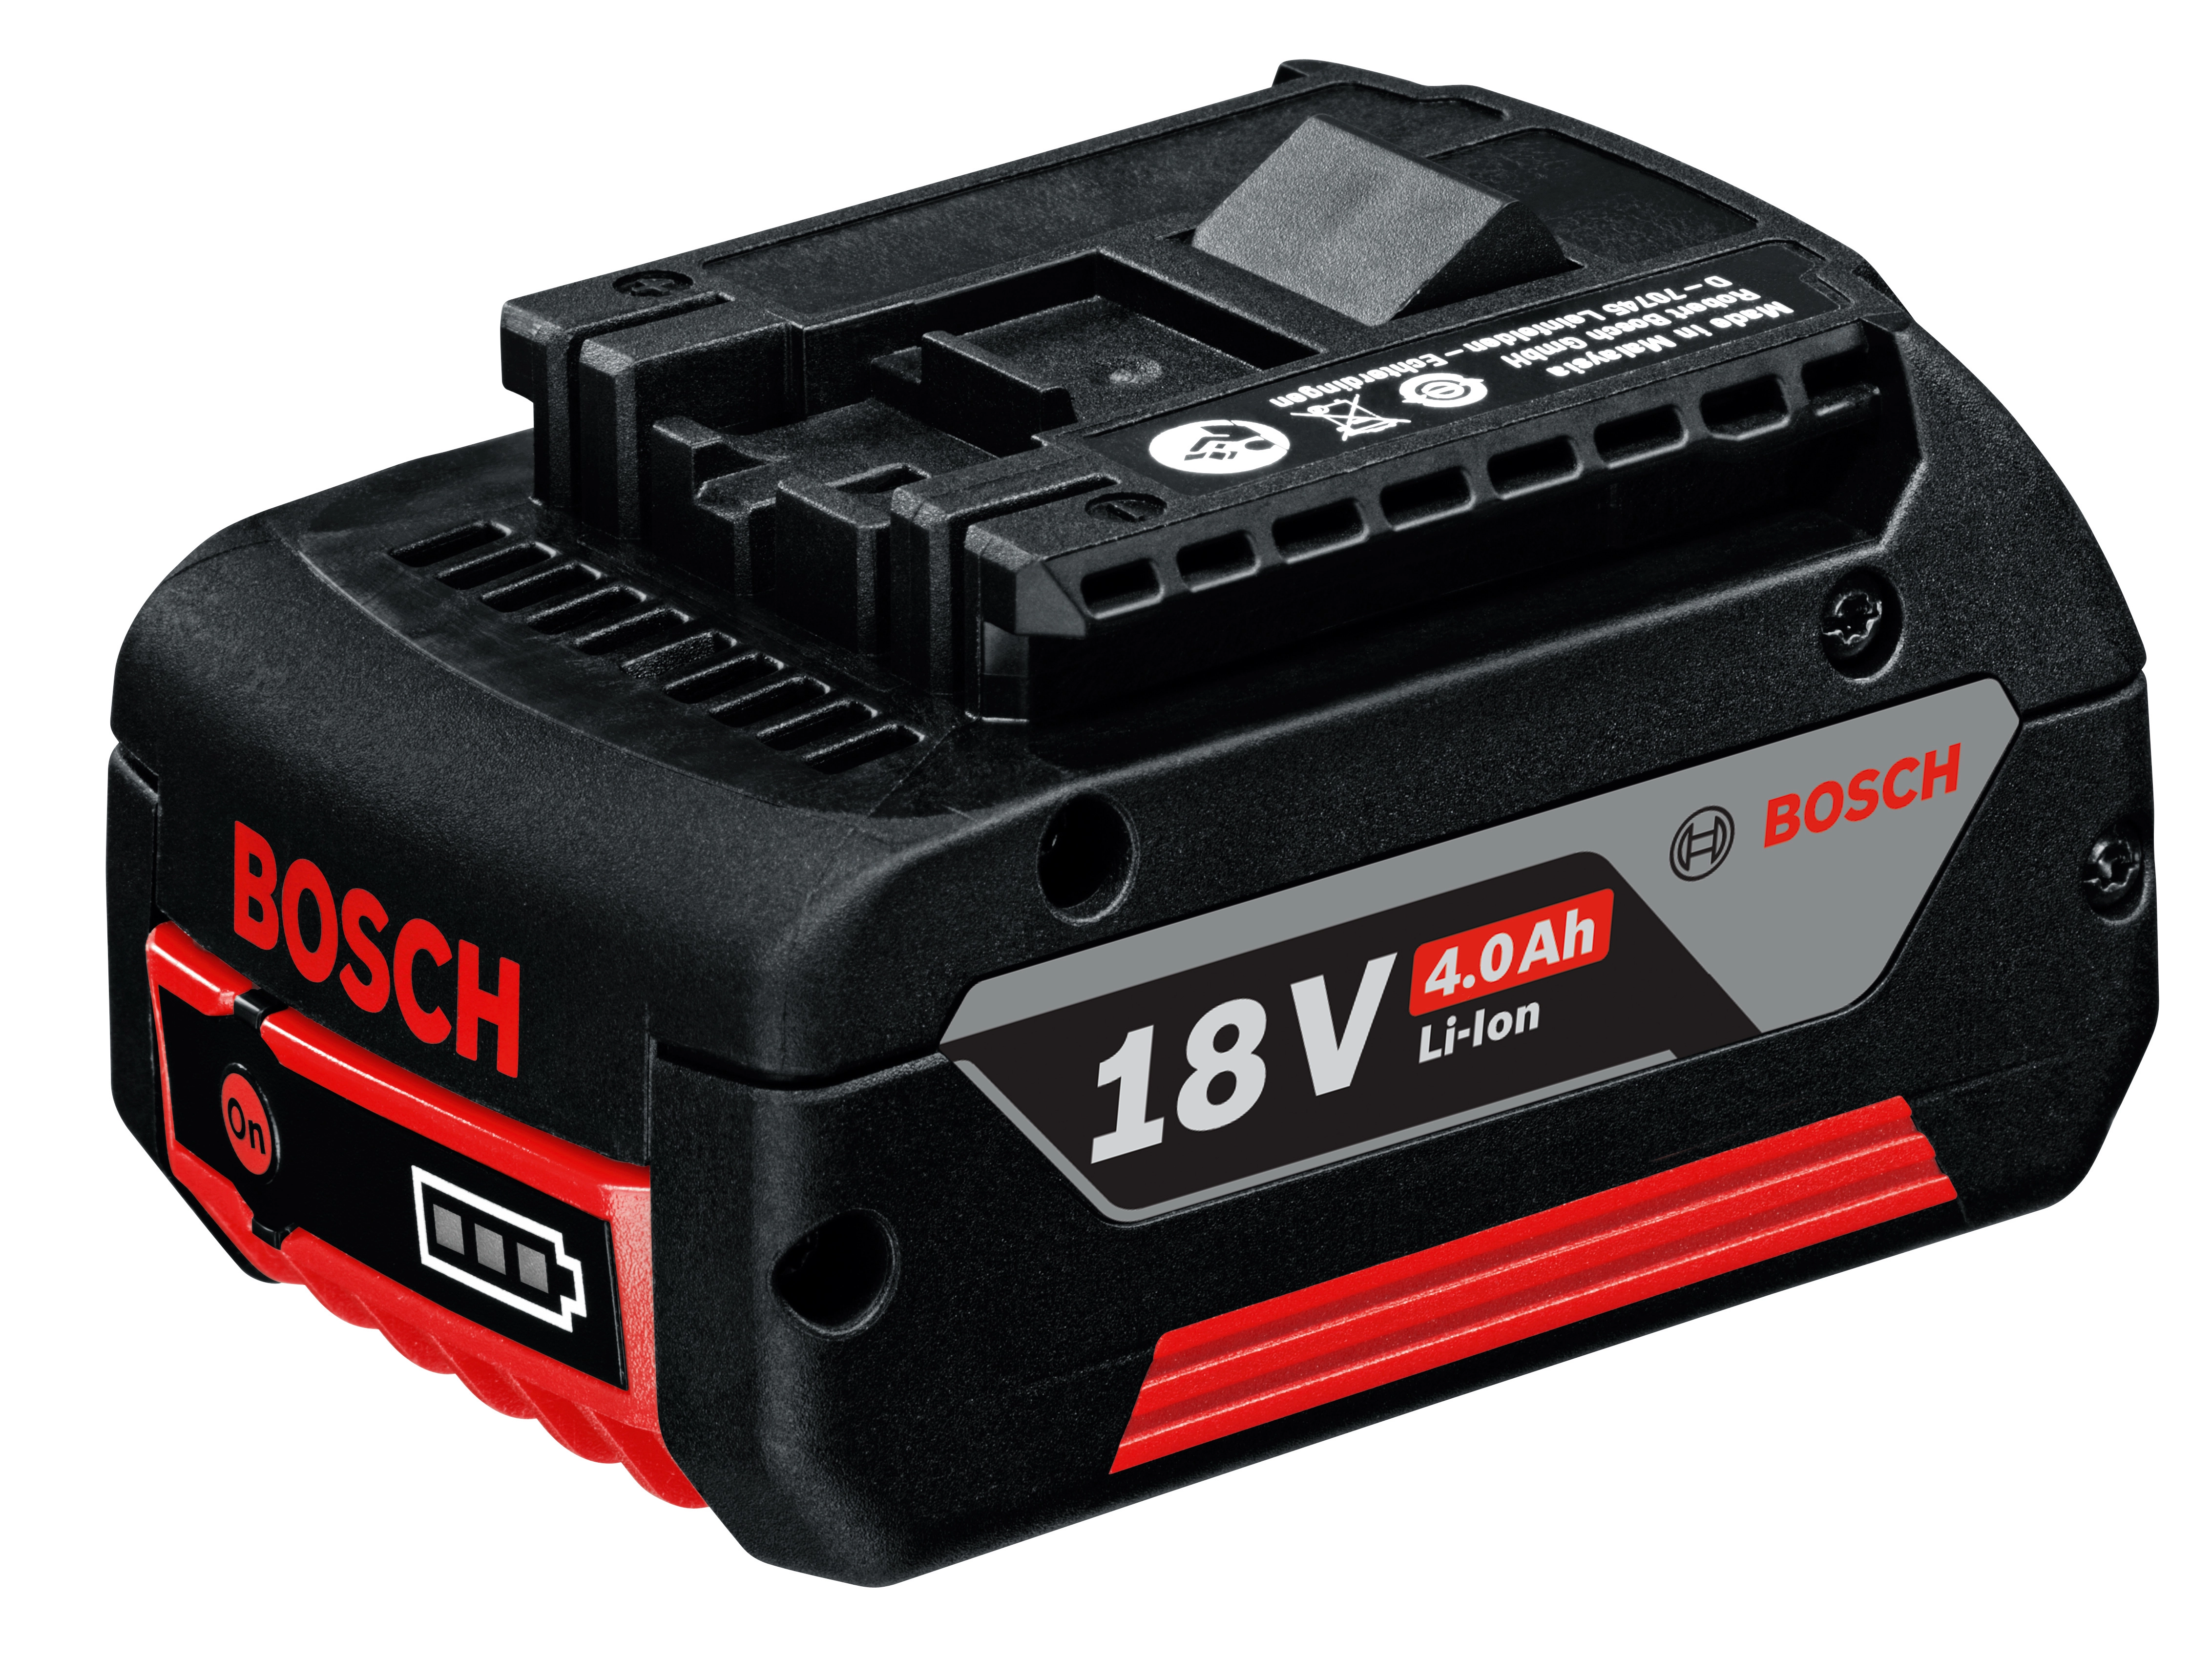 Bosch Akku Starter-Set Power4All mit 18 V 2,5 Ah Akku und Ladestation  kaufen bei OBI